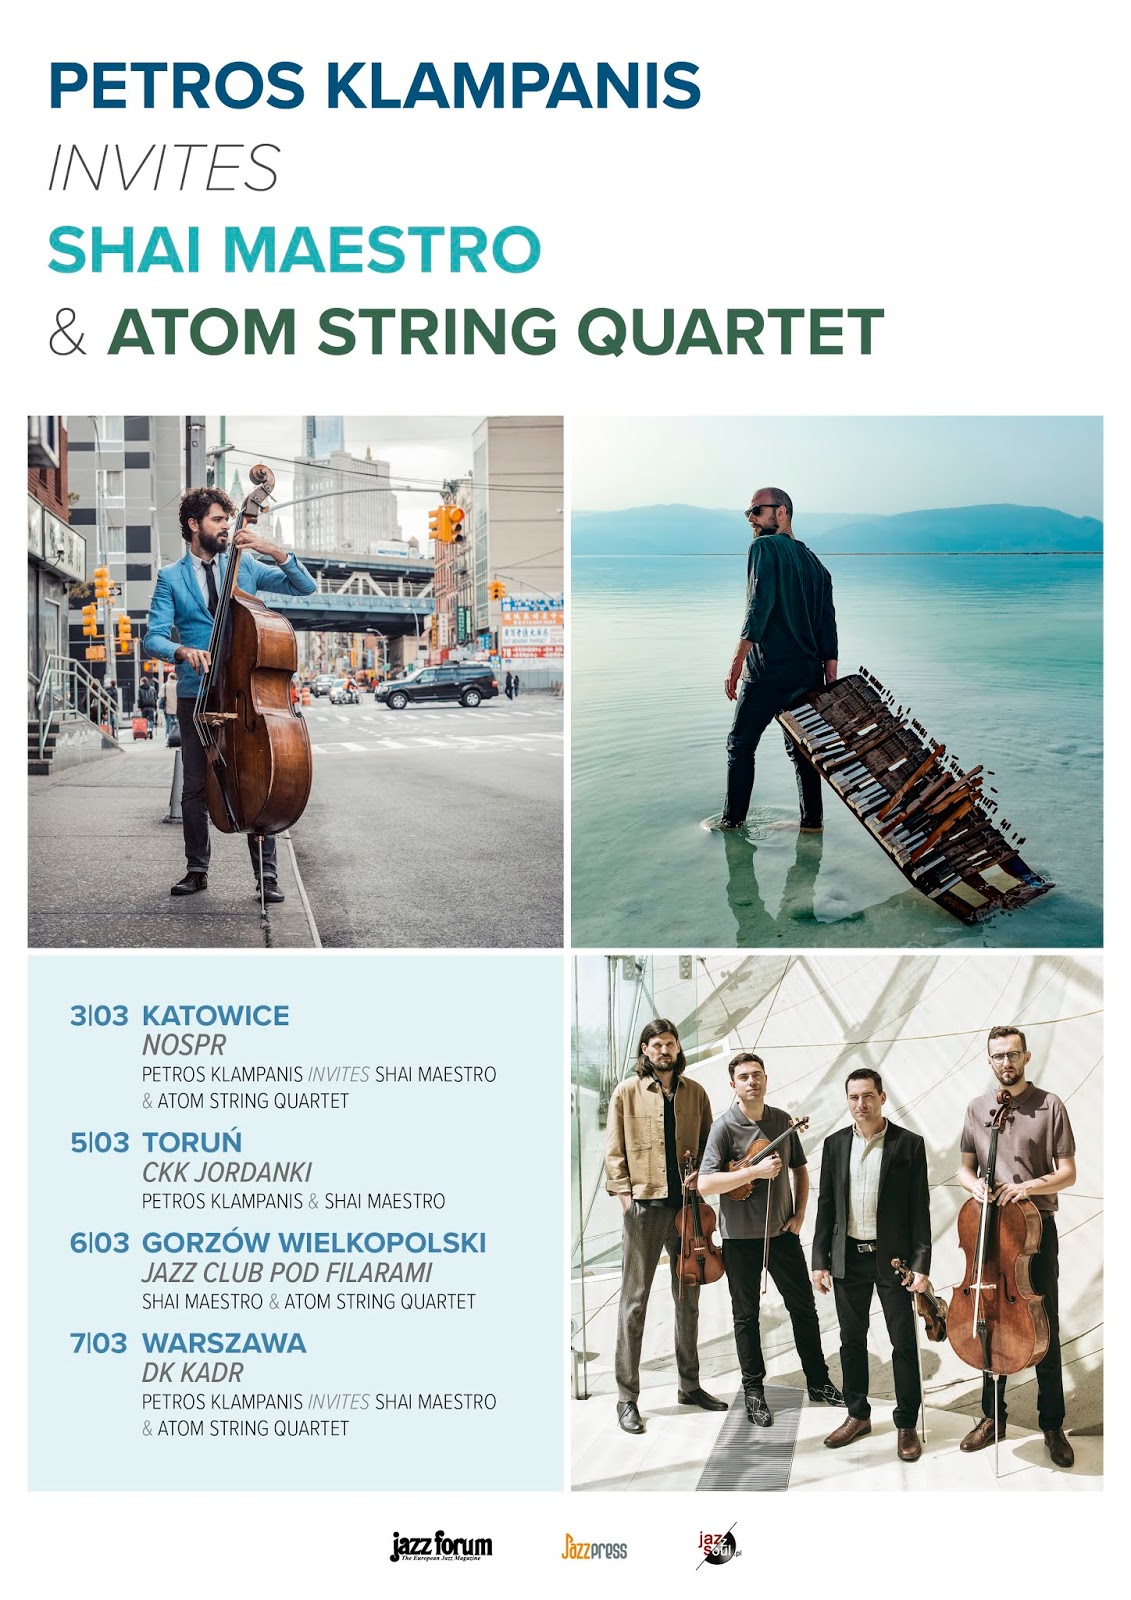 Petros Klampanis invites Shai Maestro and Atom String Quartet